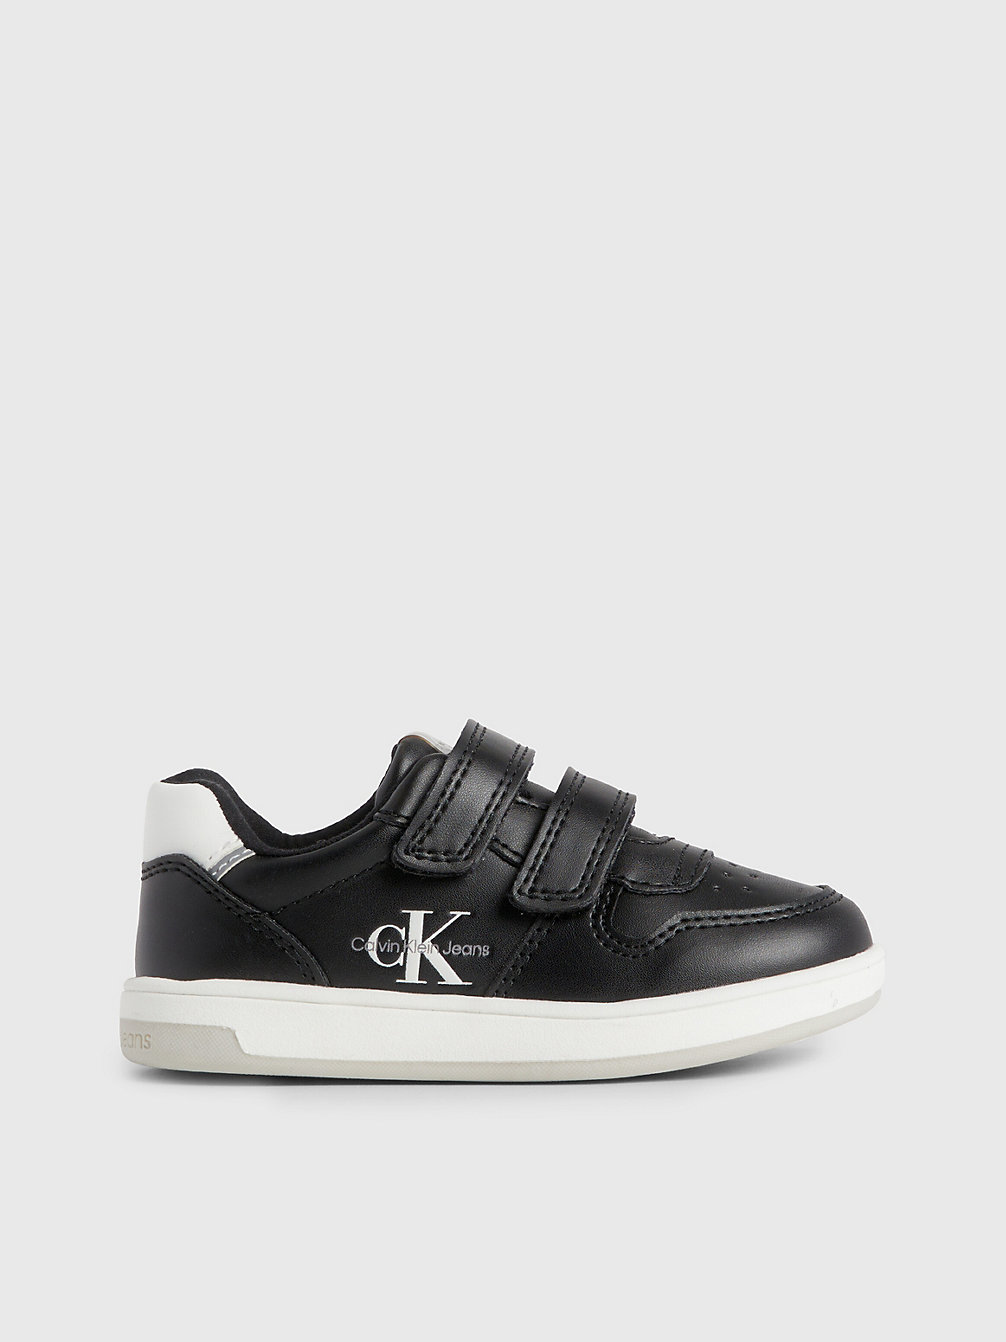 BLACK Sneakers Mit Klettverschluss Für Kleinkinder Und Kinder undefined kids unisex Calvin Klein